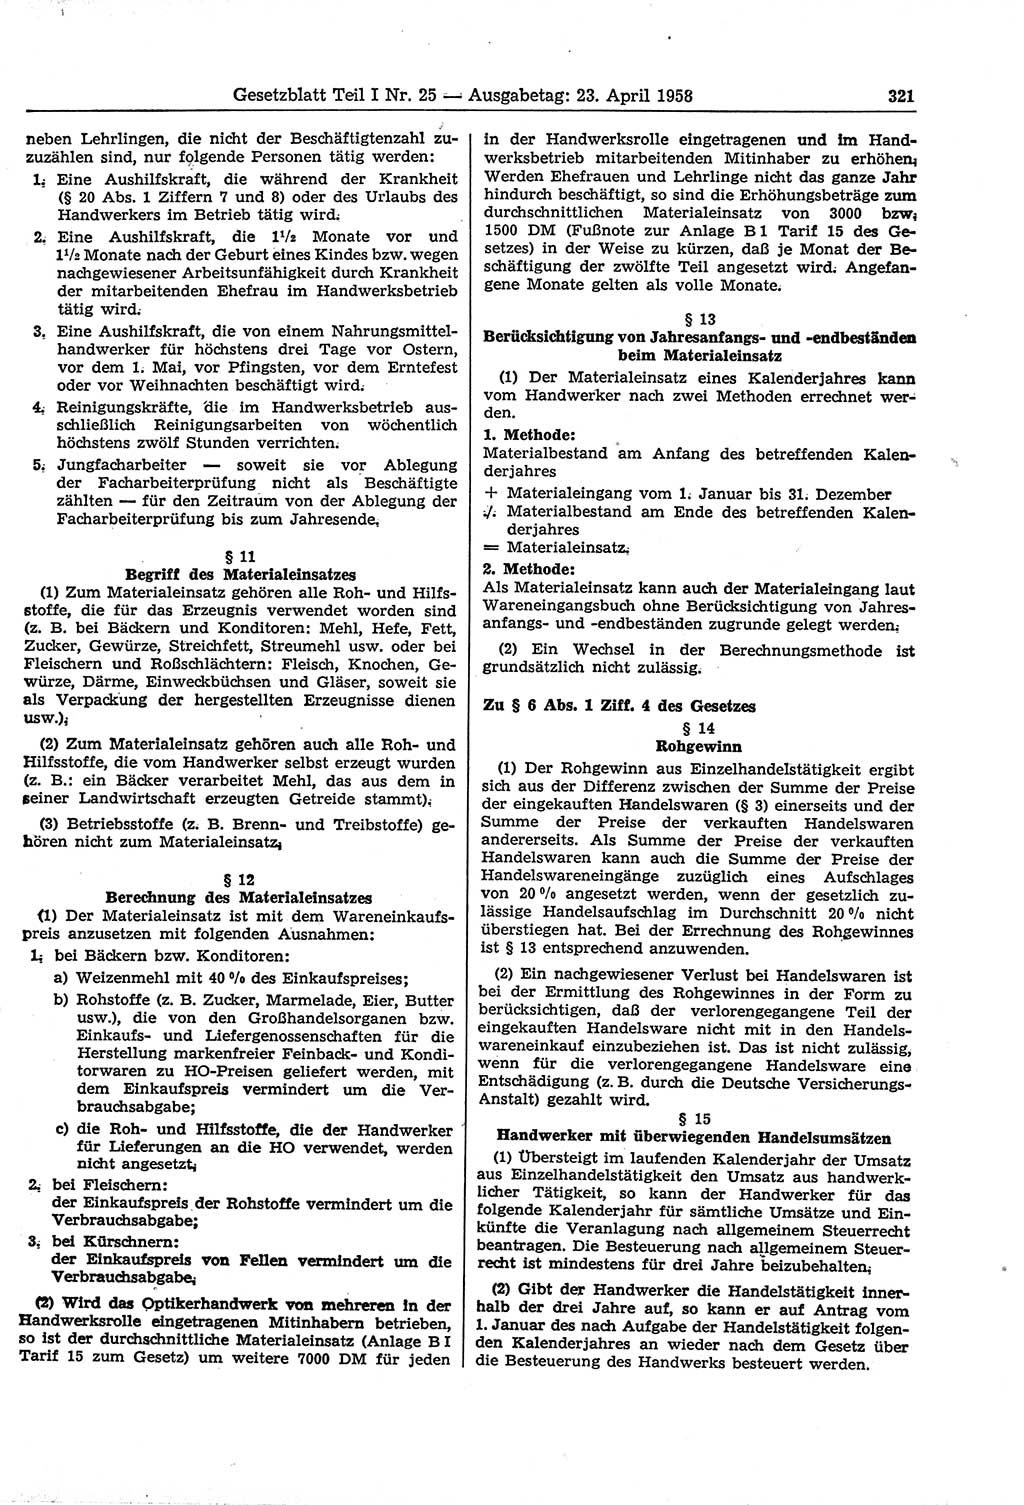 Gesetzblatt (GBl.) der Deutschen Demokratischen Republik (DDR) Teil Ⅰ 1958, Seite 321 (GBl. DDR Ⅰ 1958, S. 321)